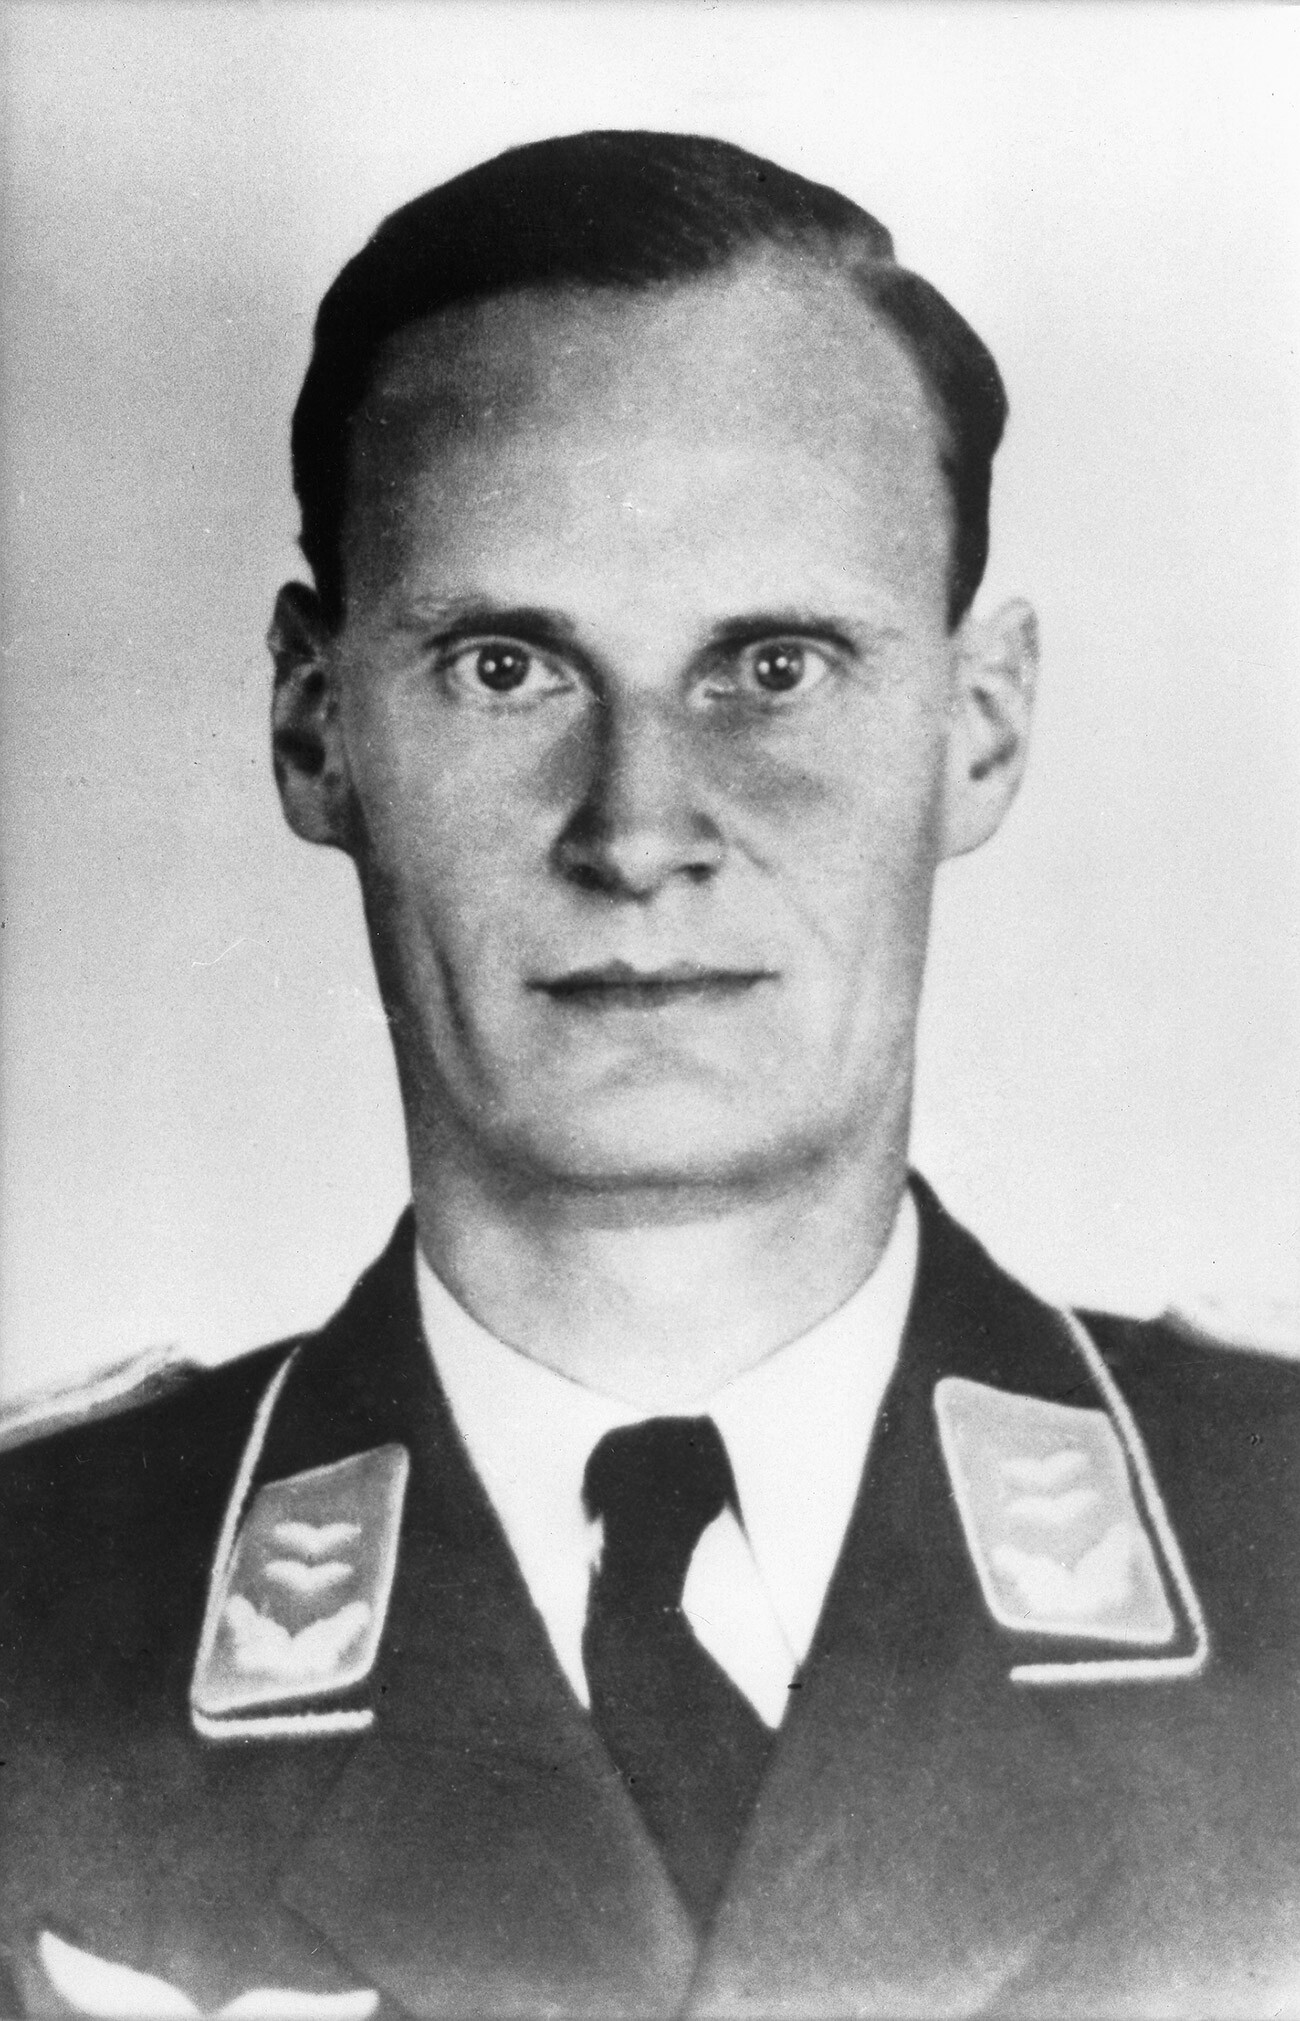 HARRO SCHULZE-BOYSEN (1909-1942). Nemški vojak in odporniški bojevnik. 